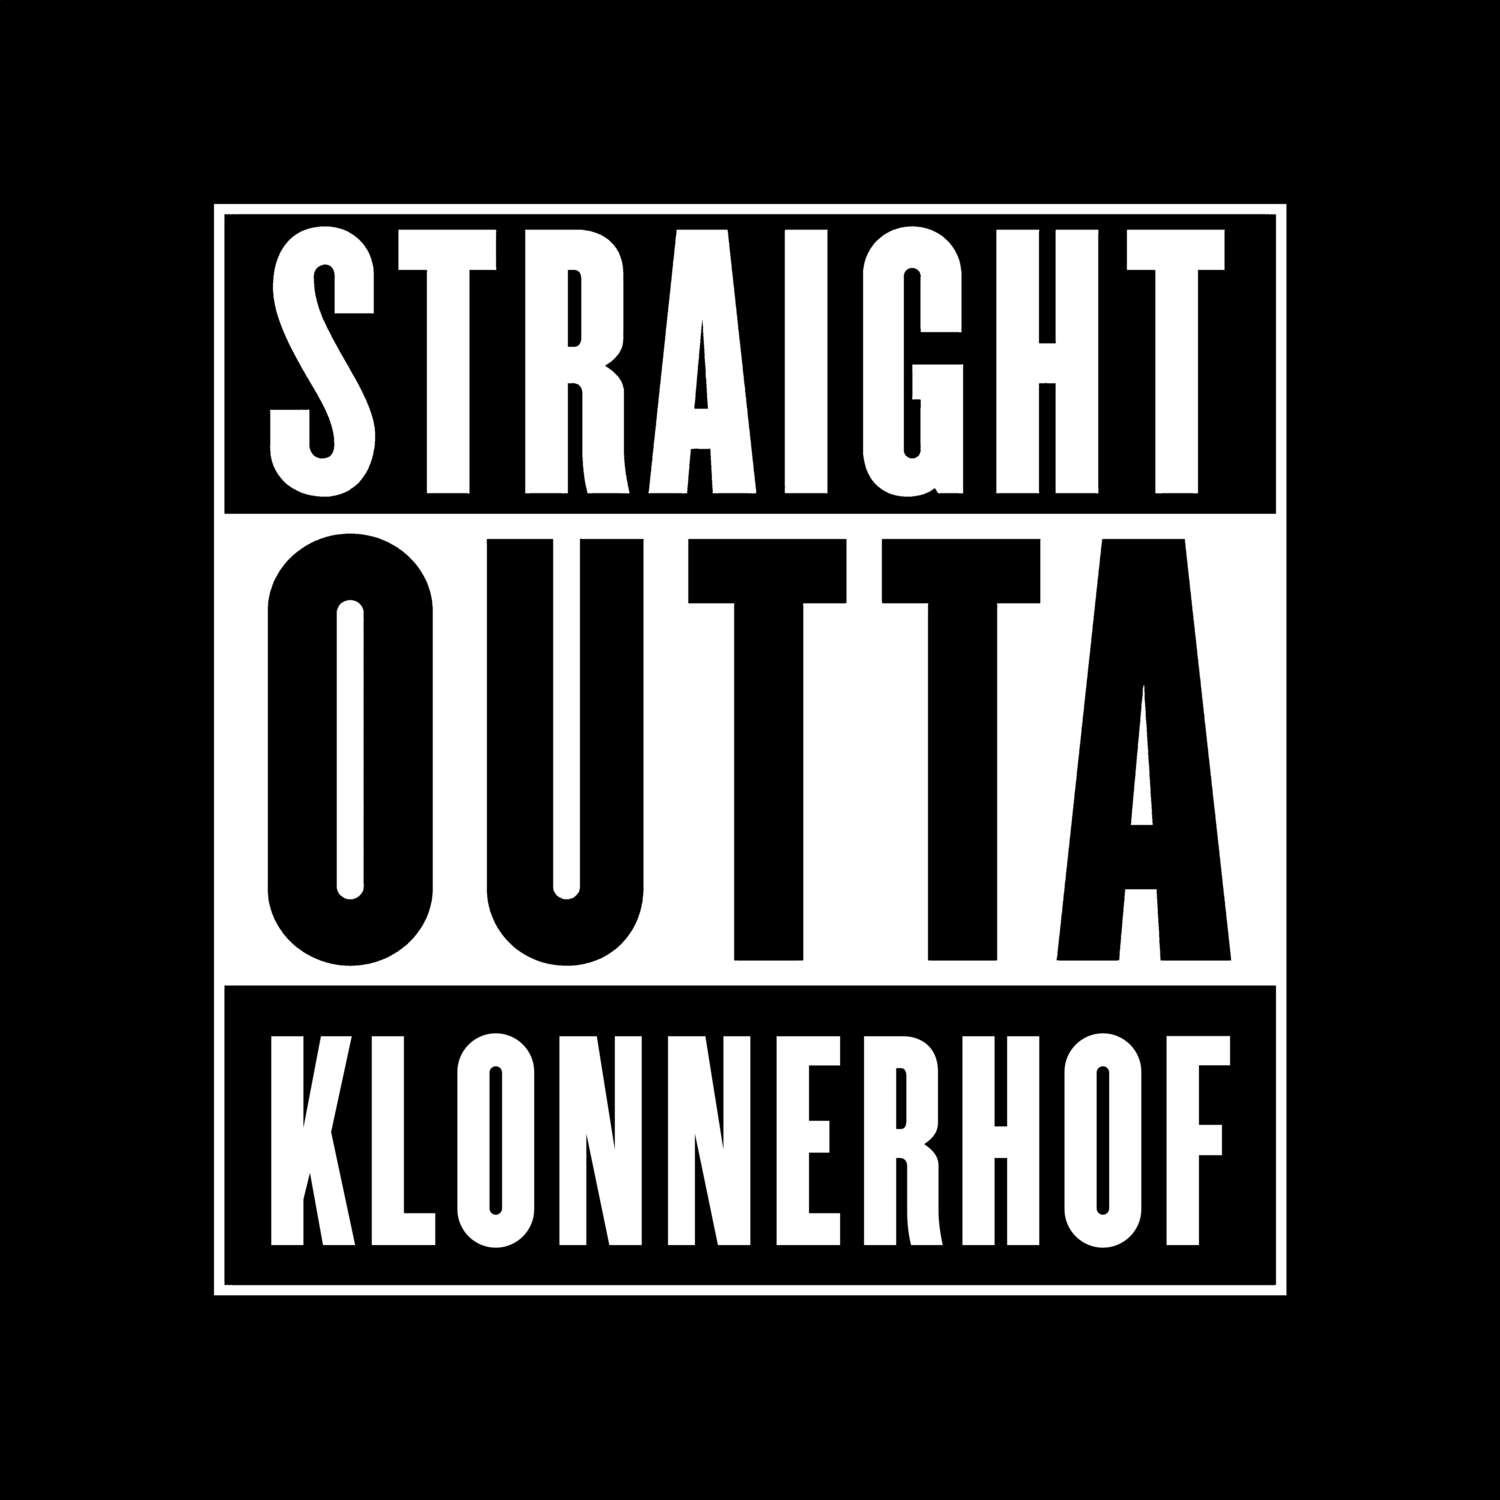 Klonnerhof T-Shirt »Straight Outta«